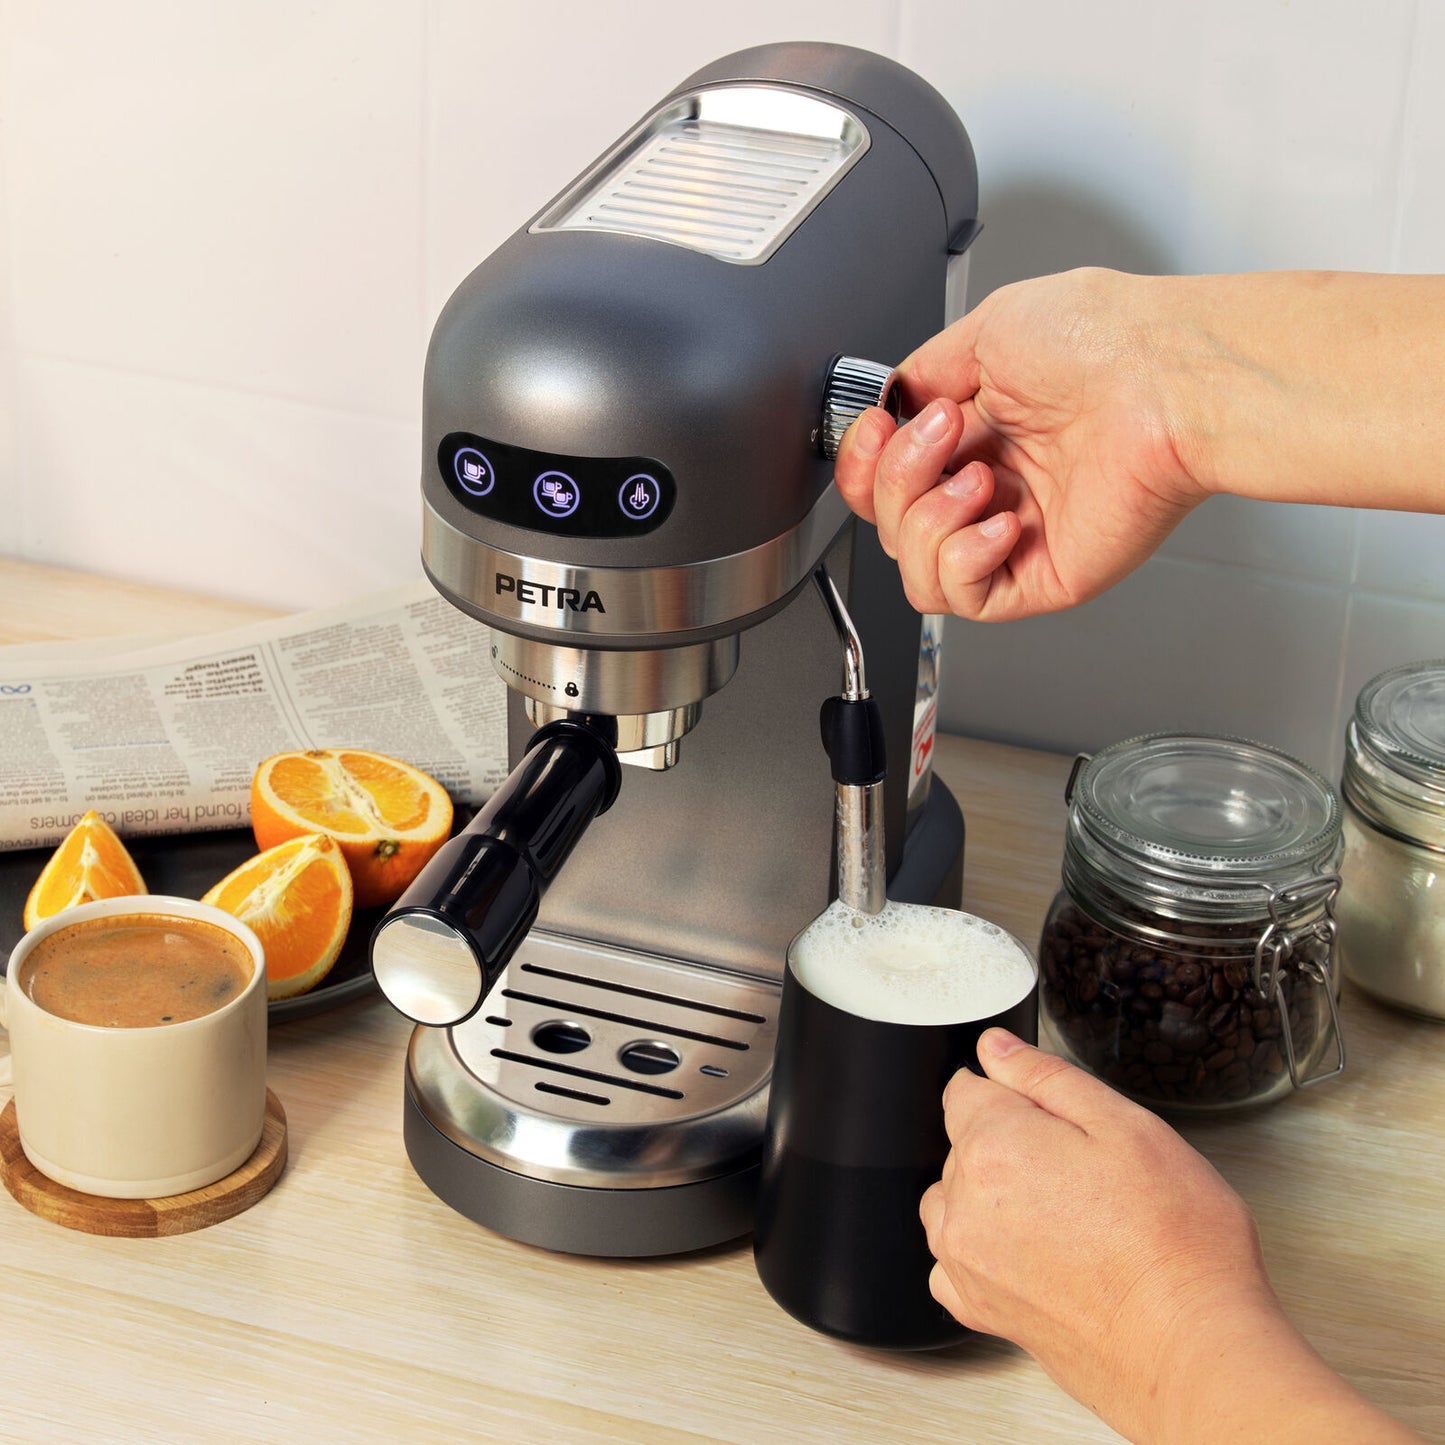 Petra Espresso Coffee Machine Cappuccino Maker 15-Bar Pressure Pump (Open Box)